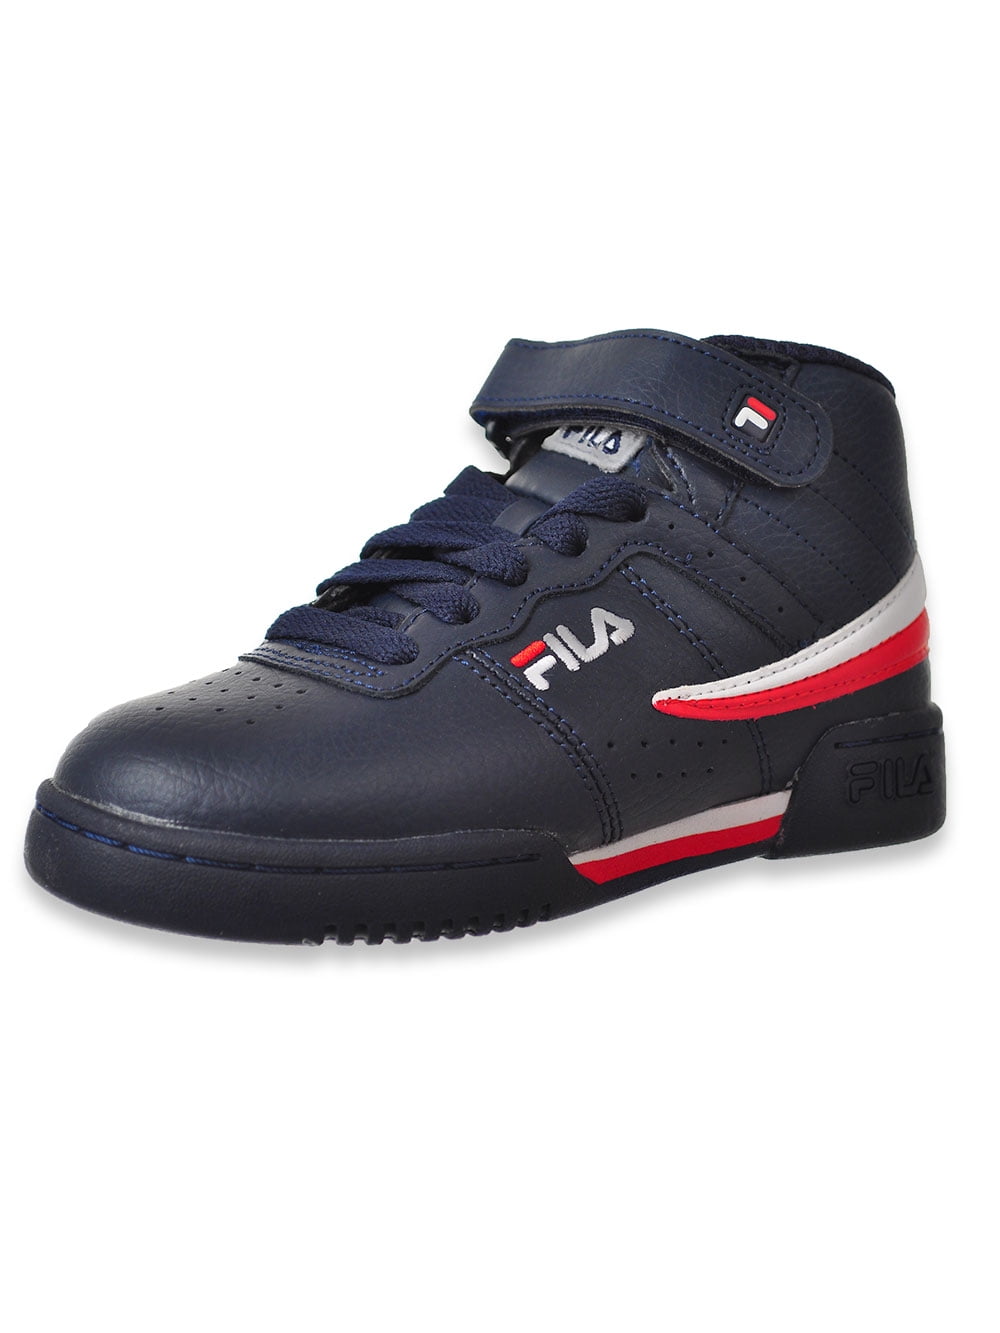 Fila - Fila Boys' F-13 Hi-Top Sneakers (Sizes 11 - 7) - Walmart.com ...